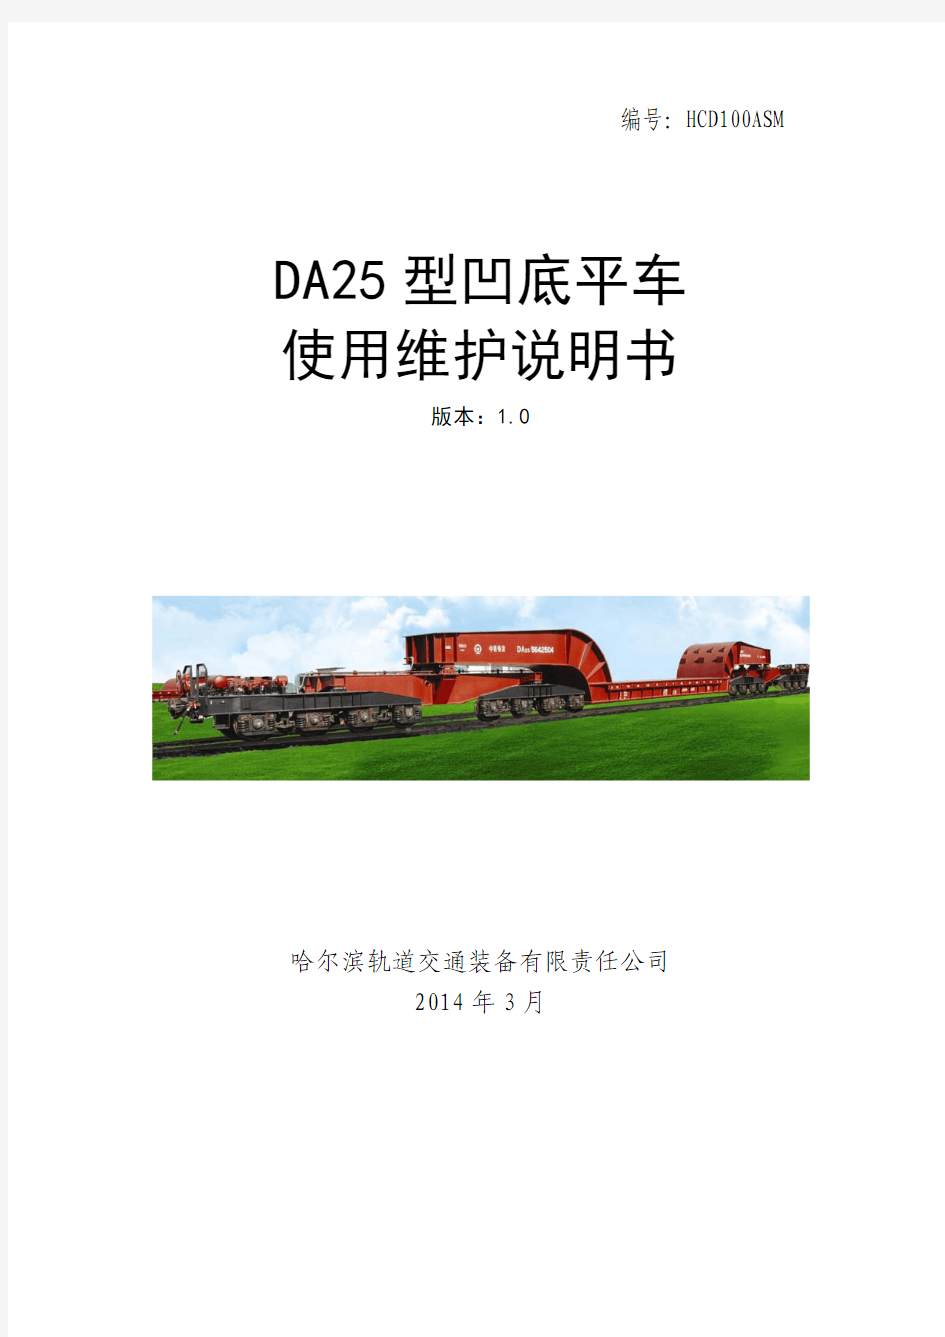 DA25型凹底平车使用维护说明书(1.0版)